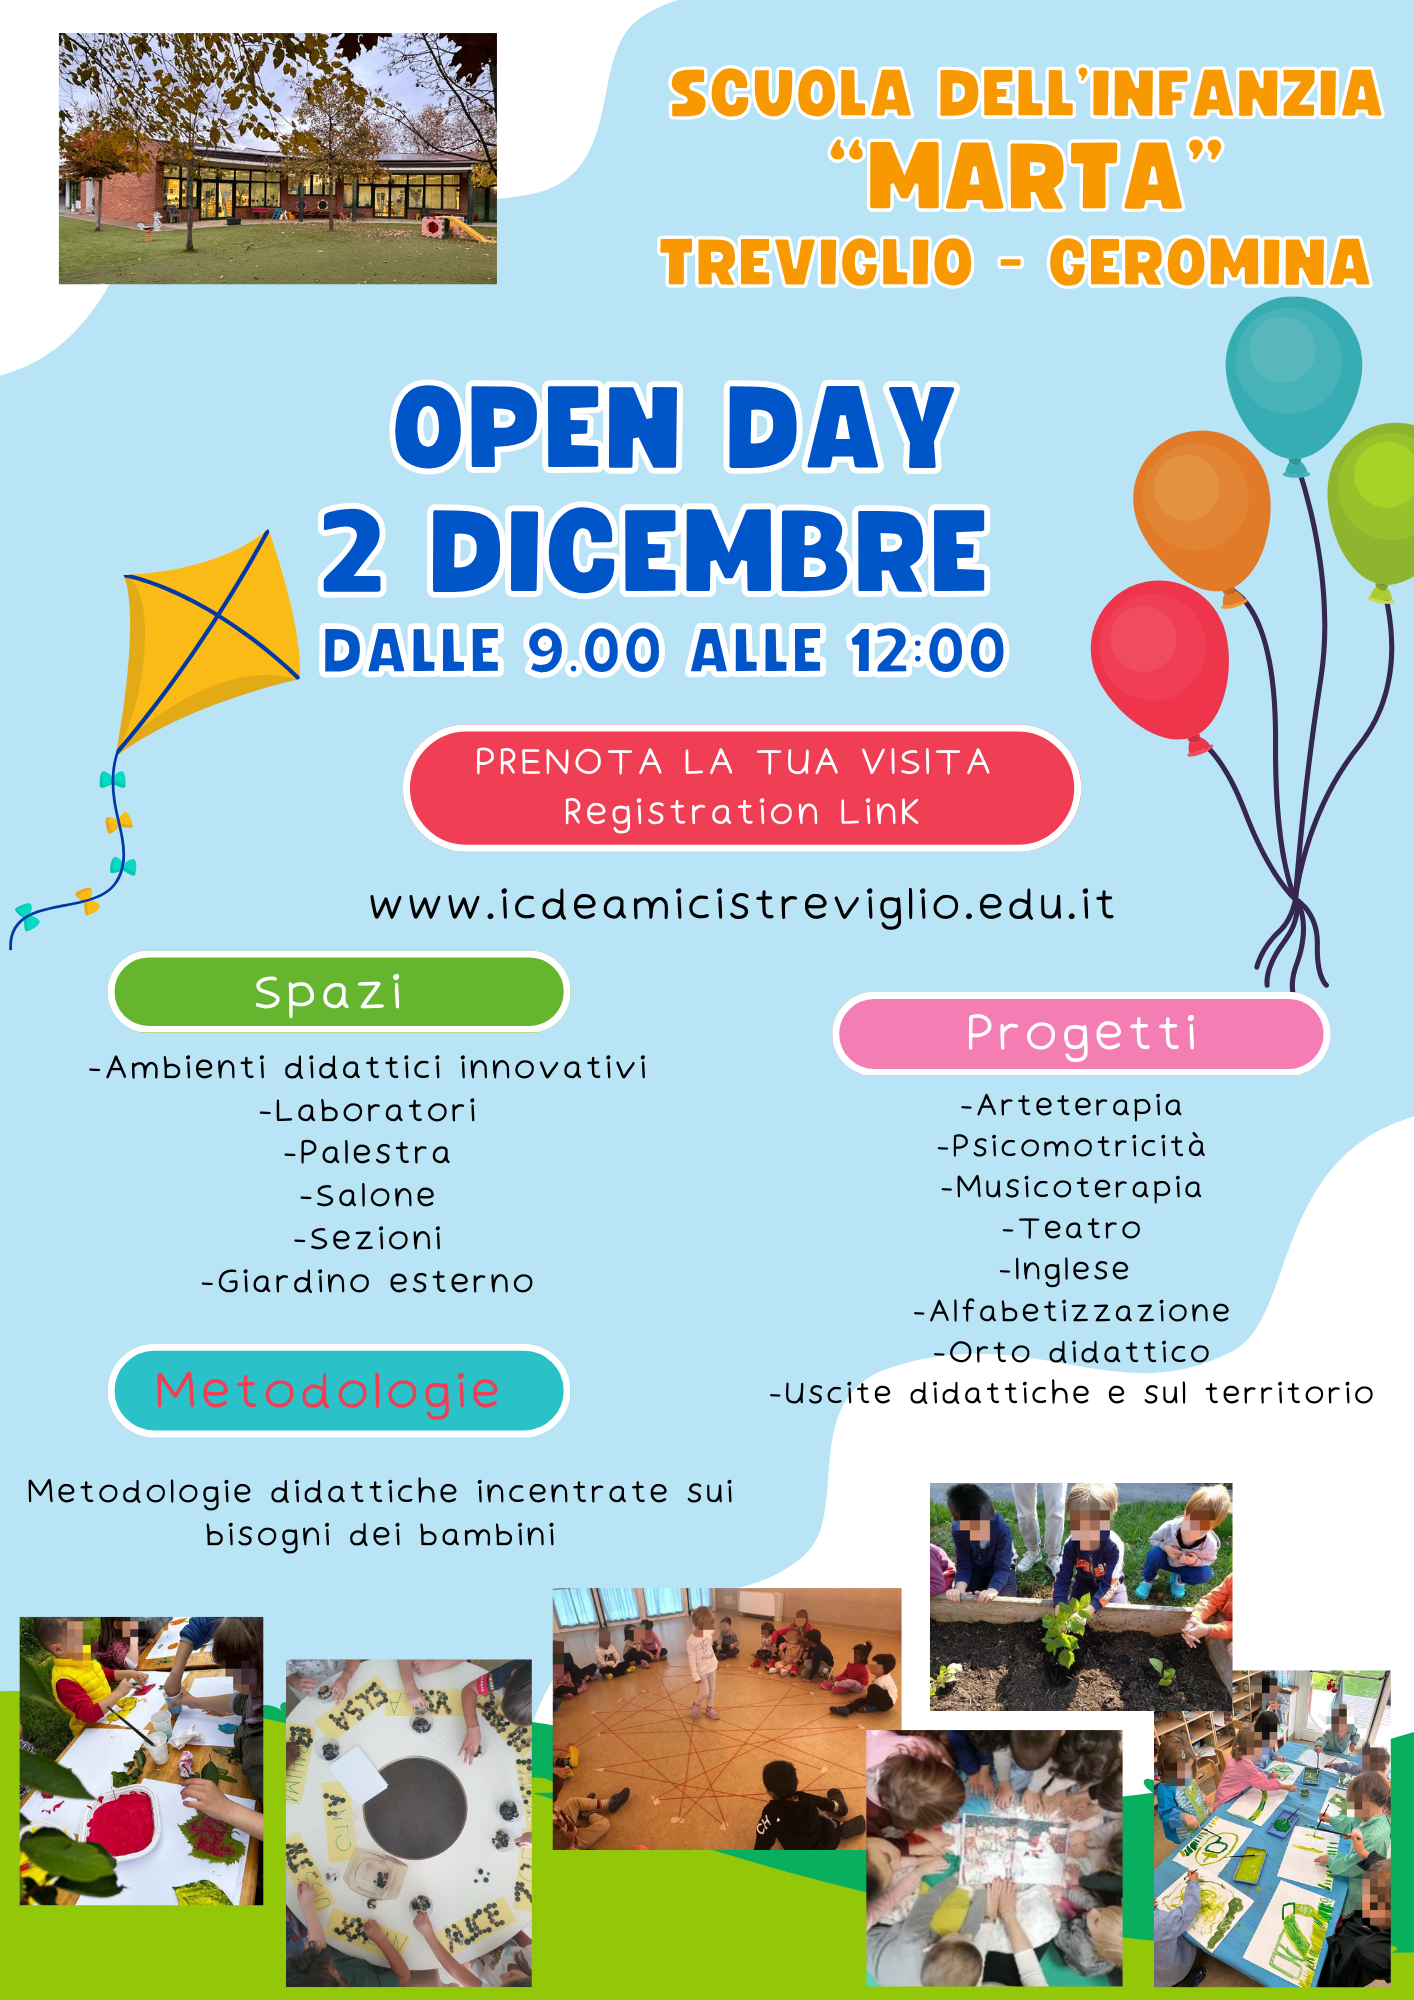 Open Day Scuola Dell’Infanzia “Marta”